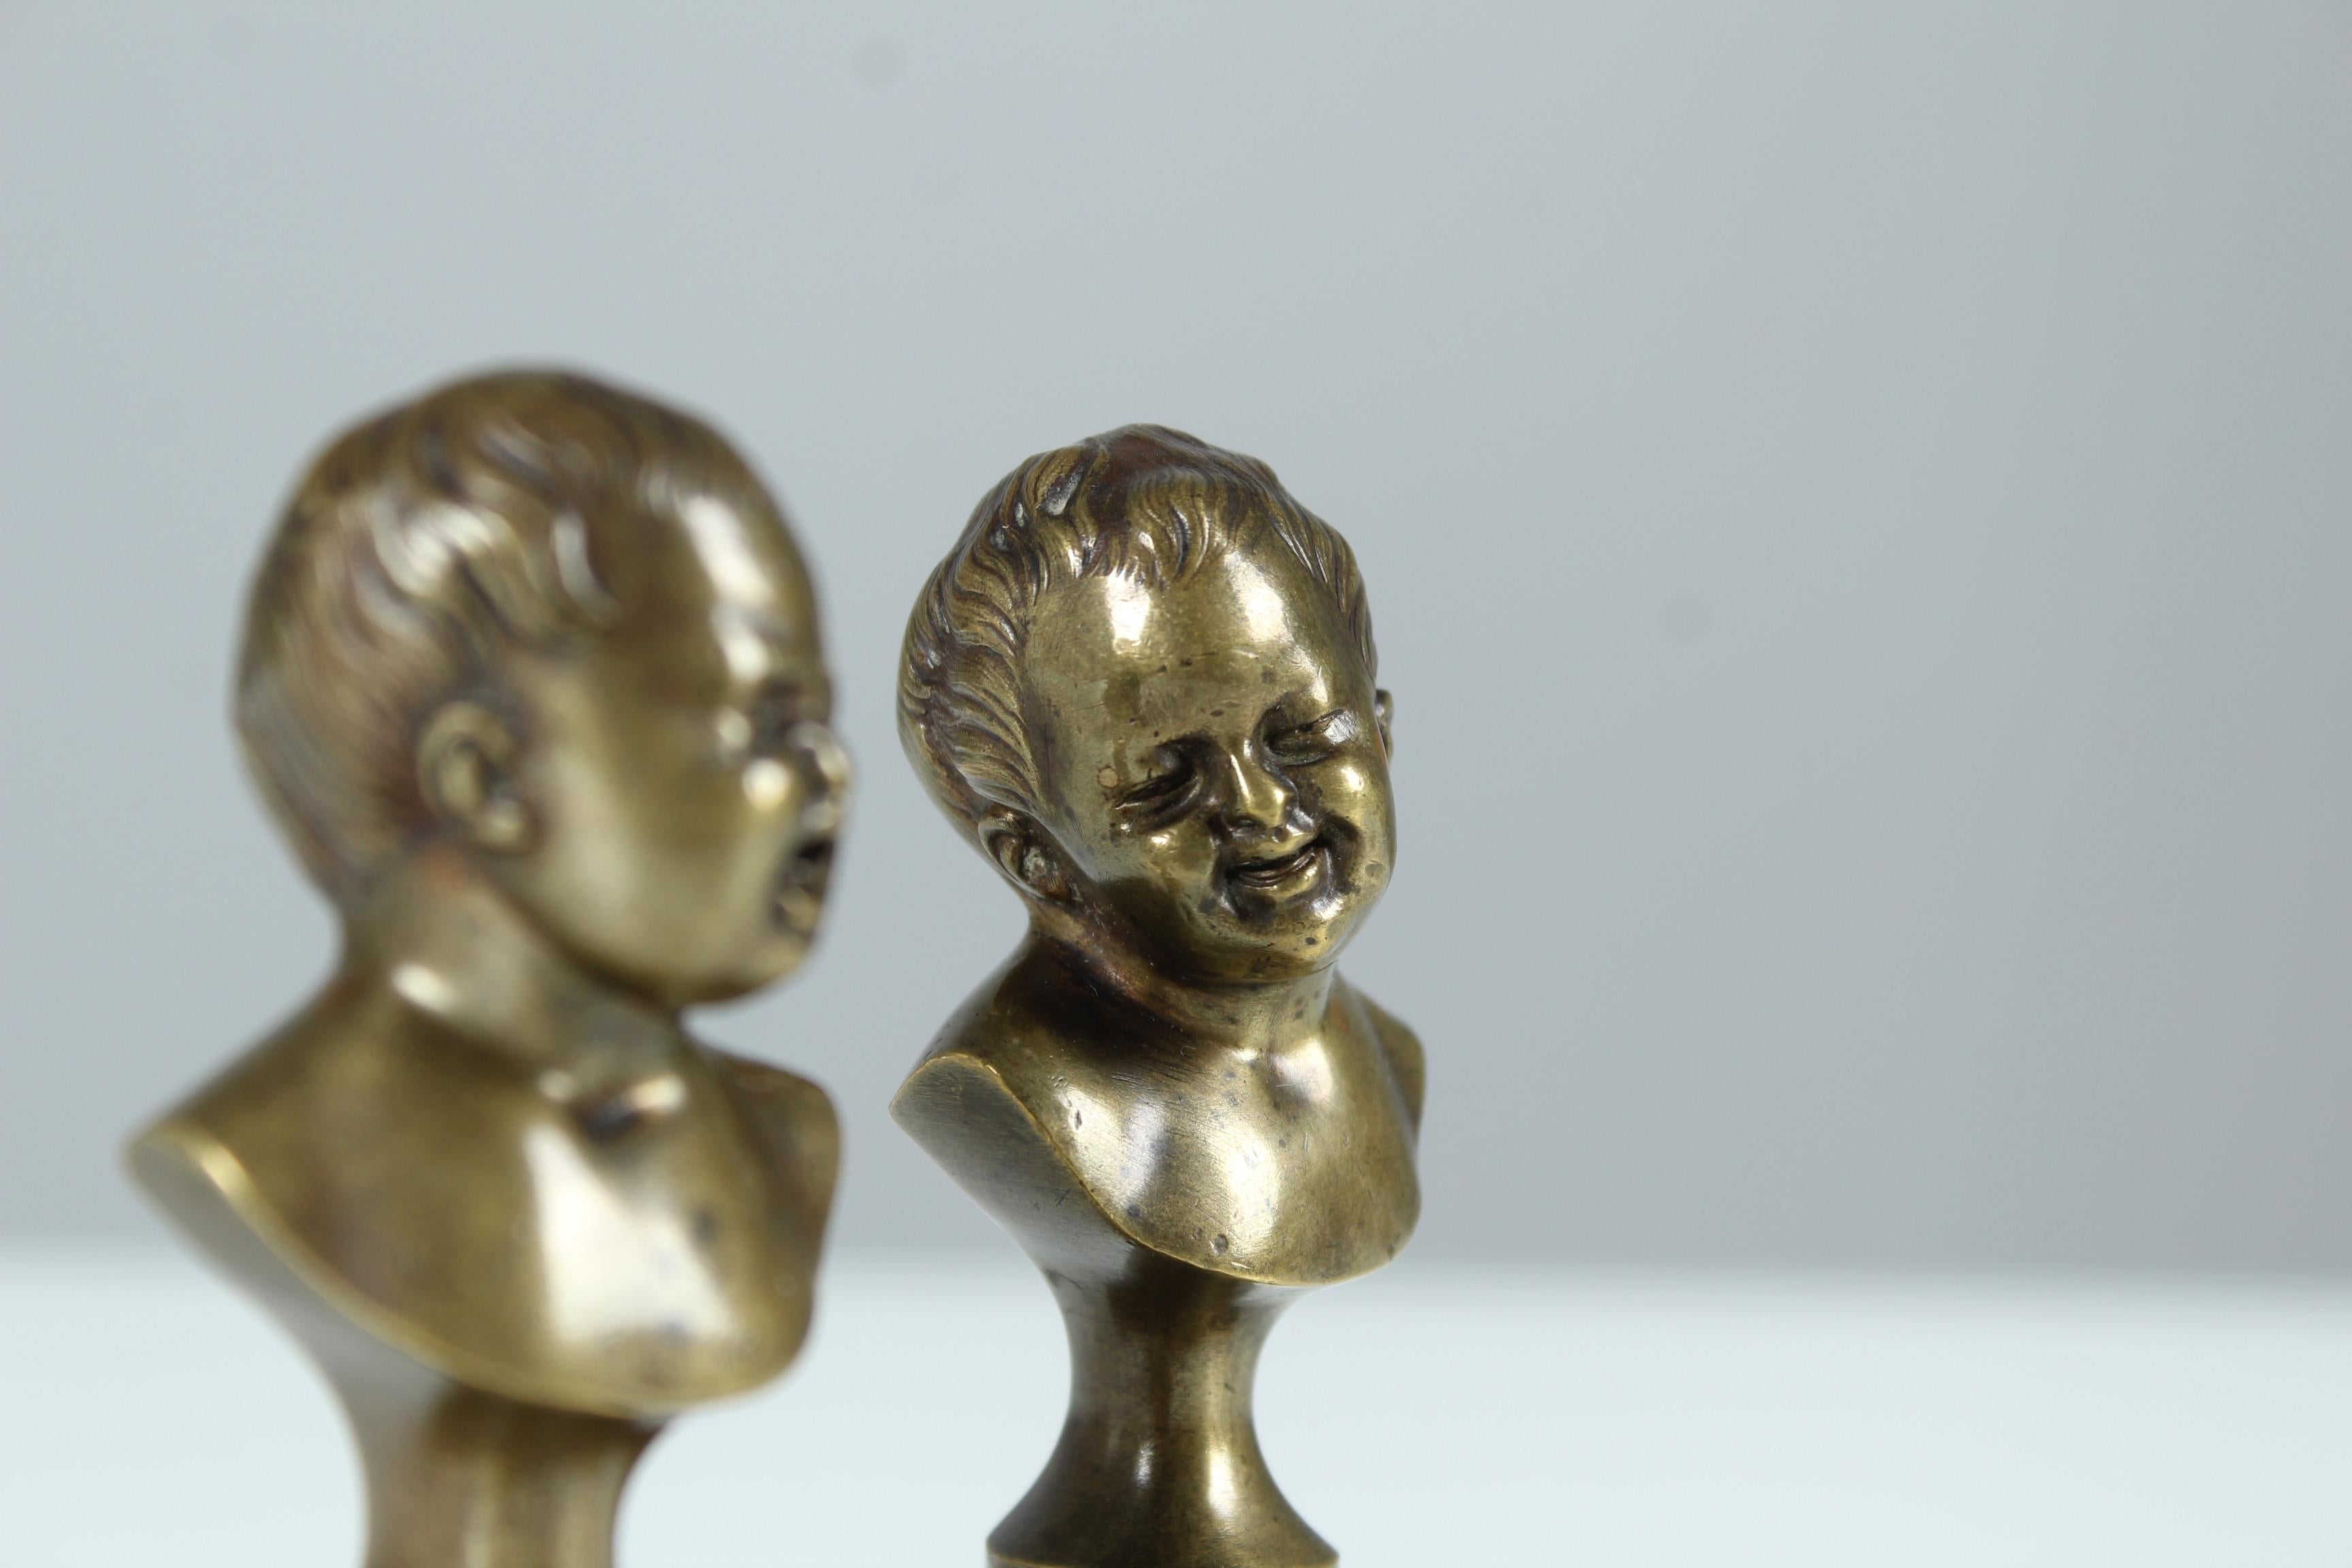 Antikes Paar Miniaturbüsten von zwei Kindern, eines weint und eines lacht.
Schöne Bronzearbeit, schön gemeißelt und poliert.
Frankreich, Ende 19. Jahrhundert.

